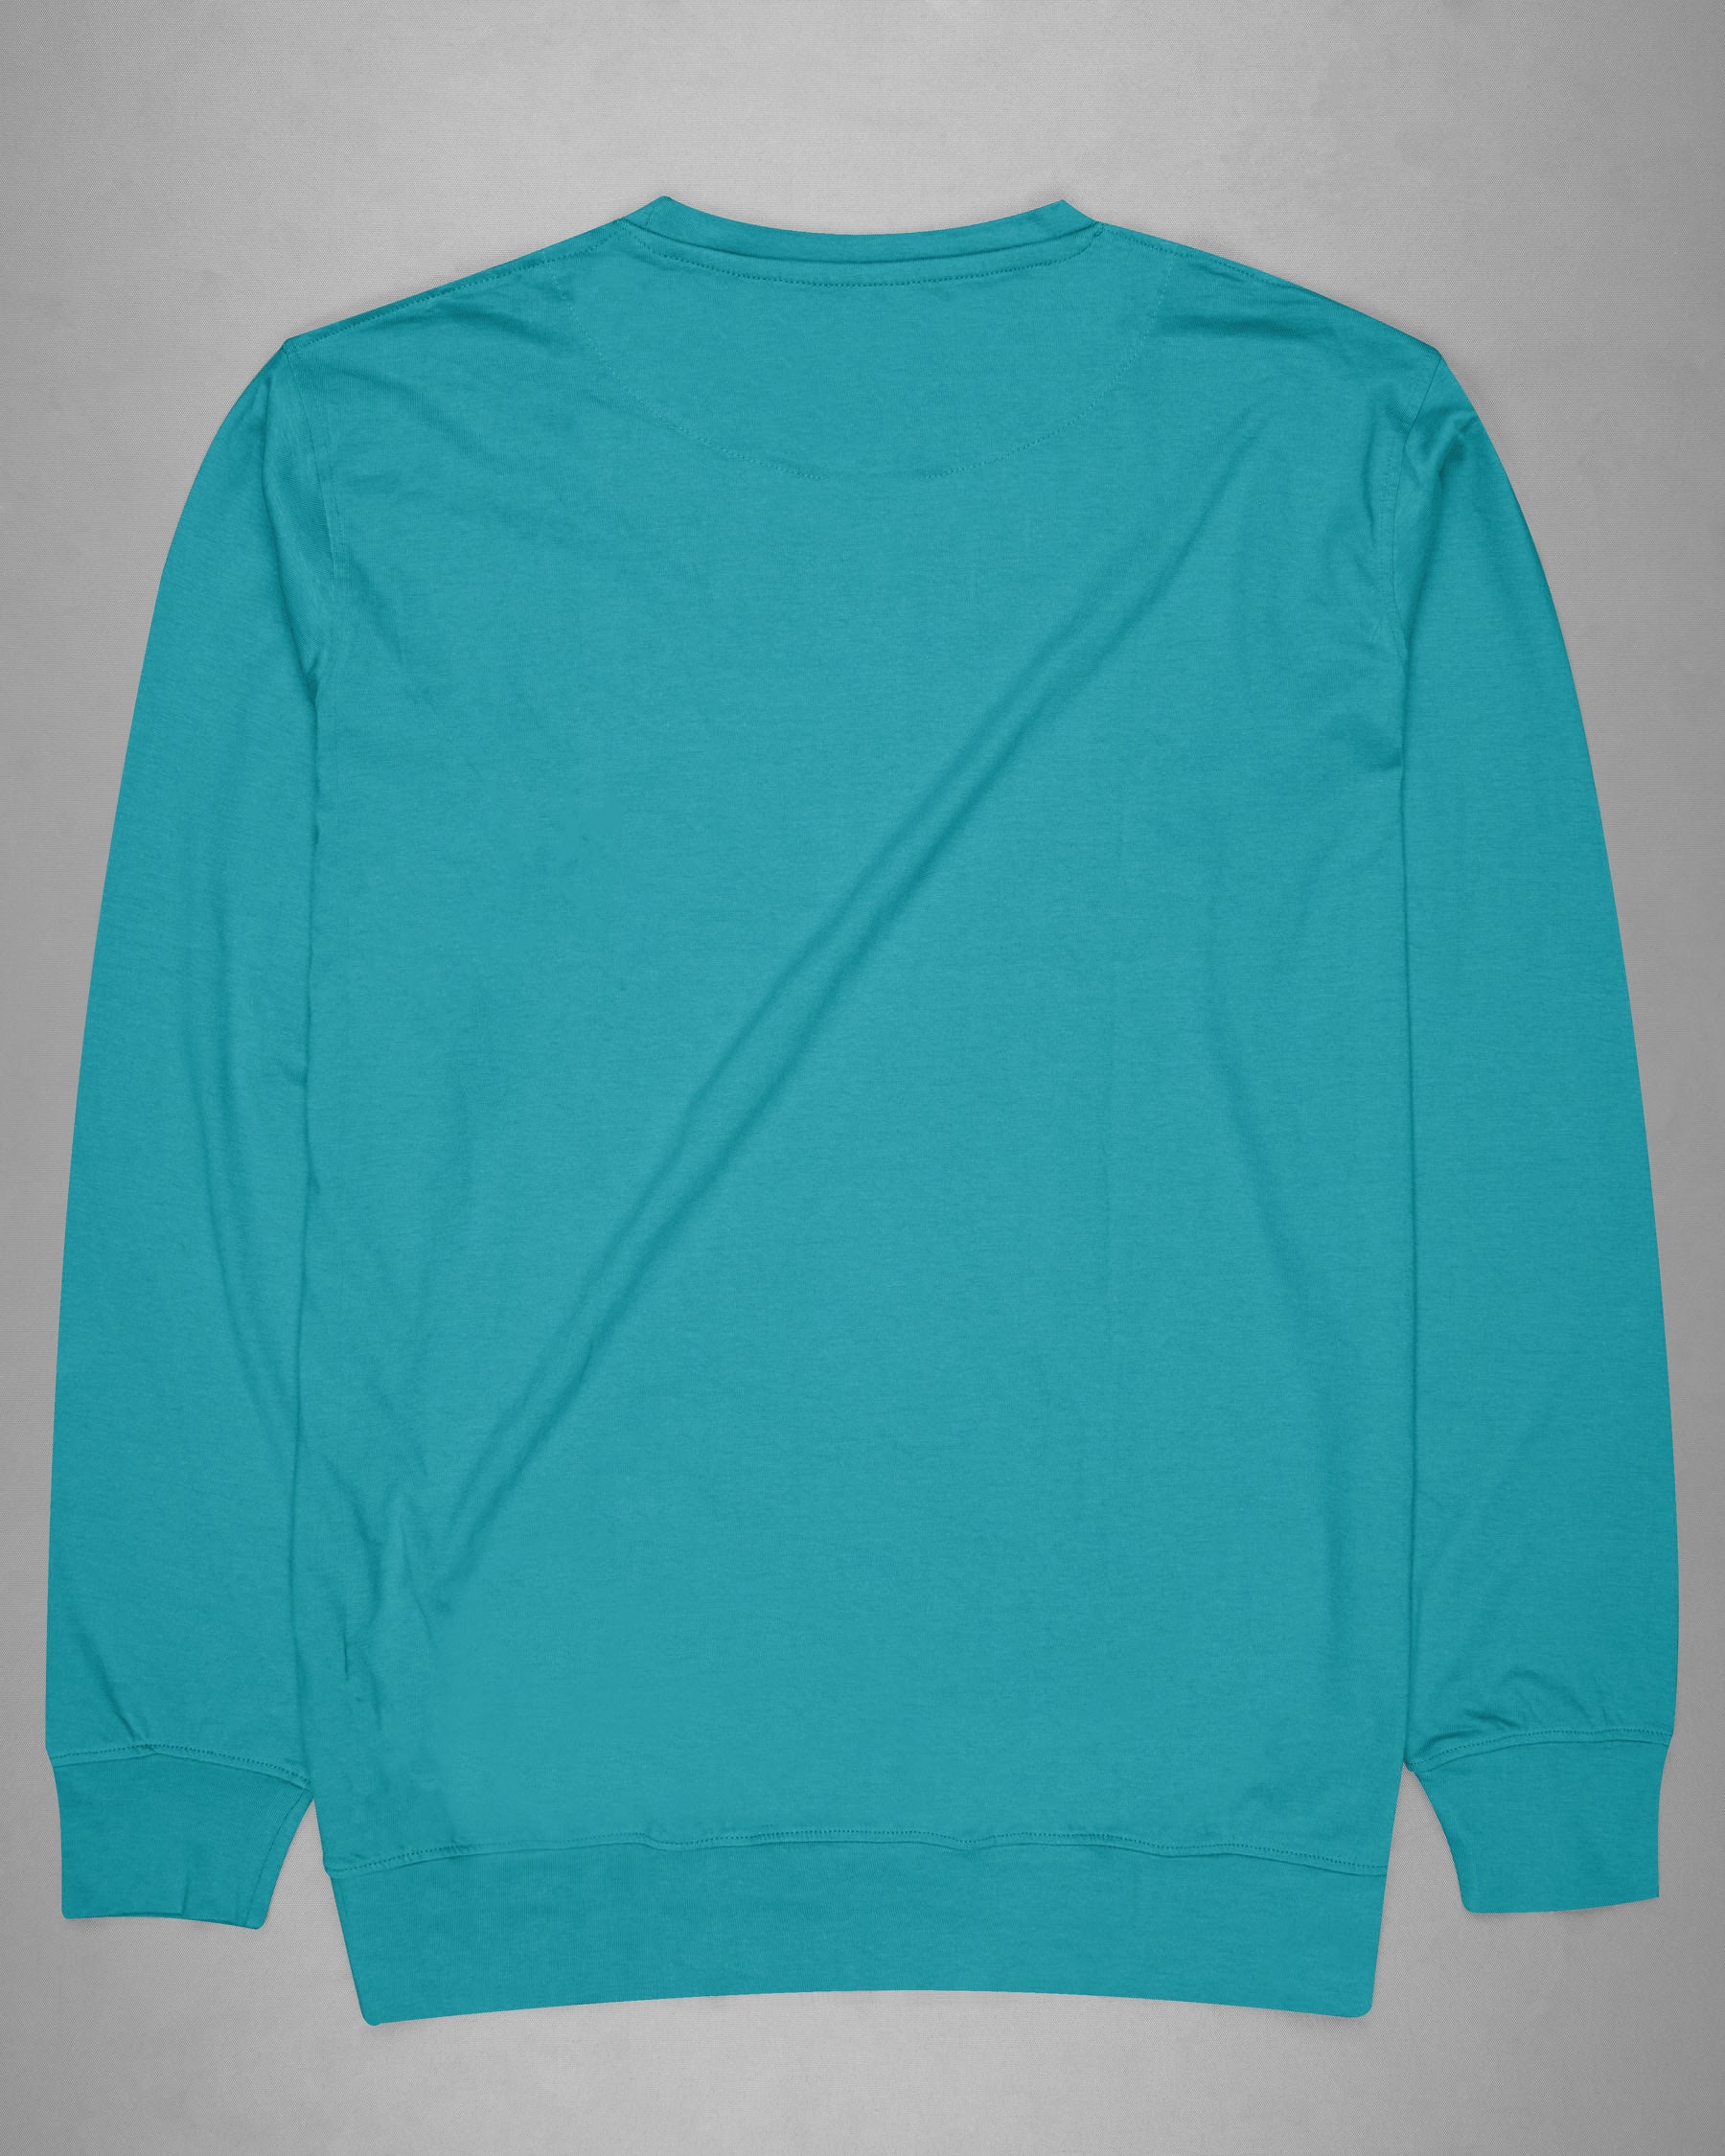 Blue Chill Full Sleeve Premium Cotton Jersey Sweatshirt TS497-S, TS497-M, TS497-L, TS497-XL, TS497-XXL